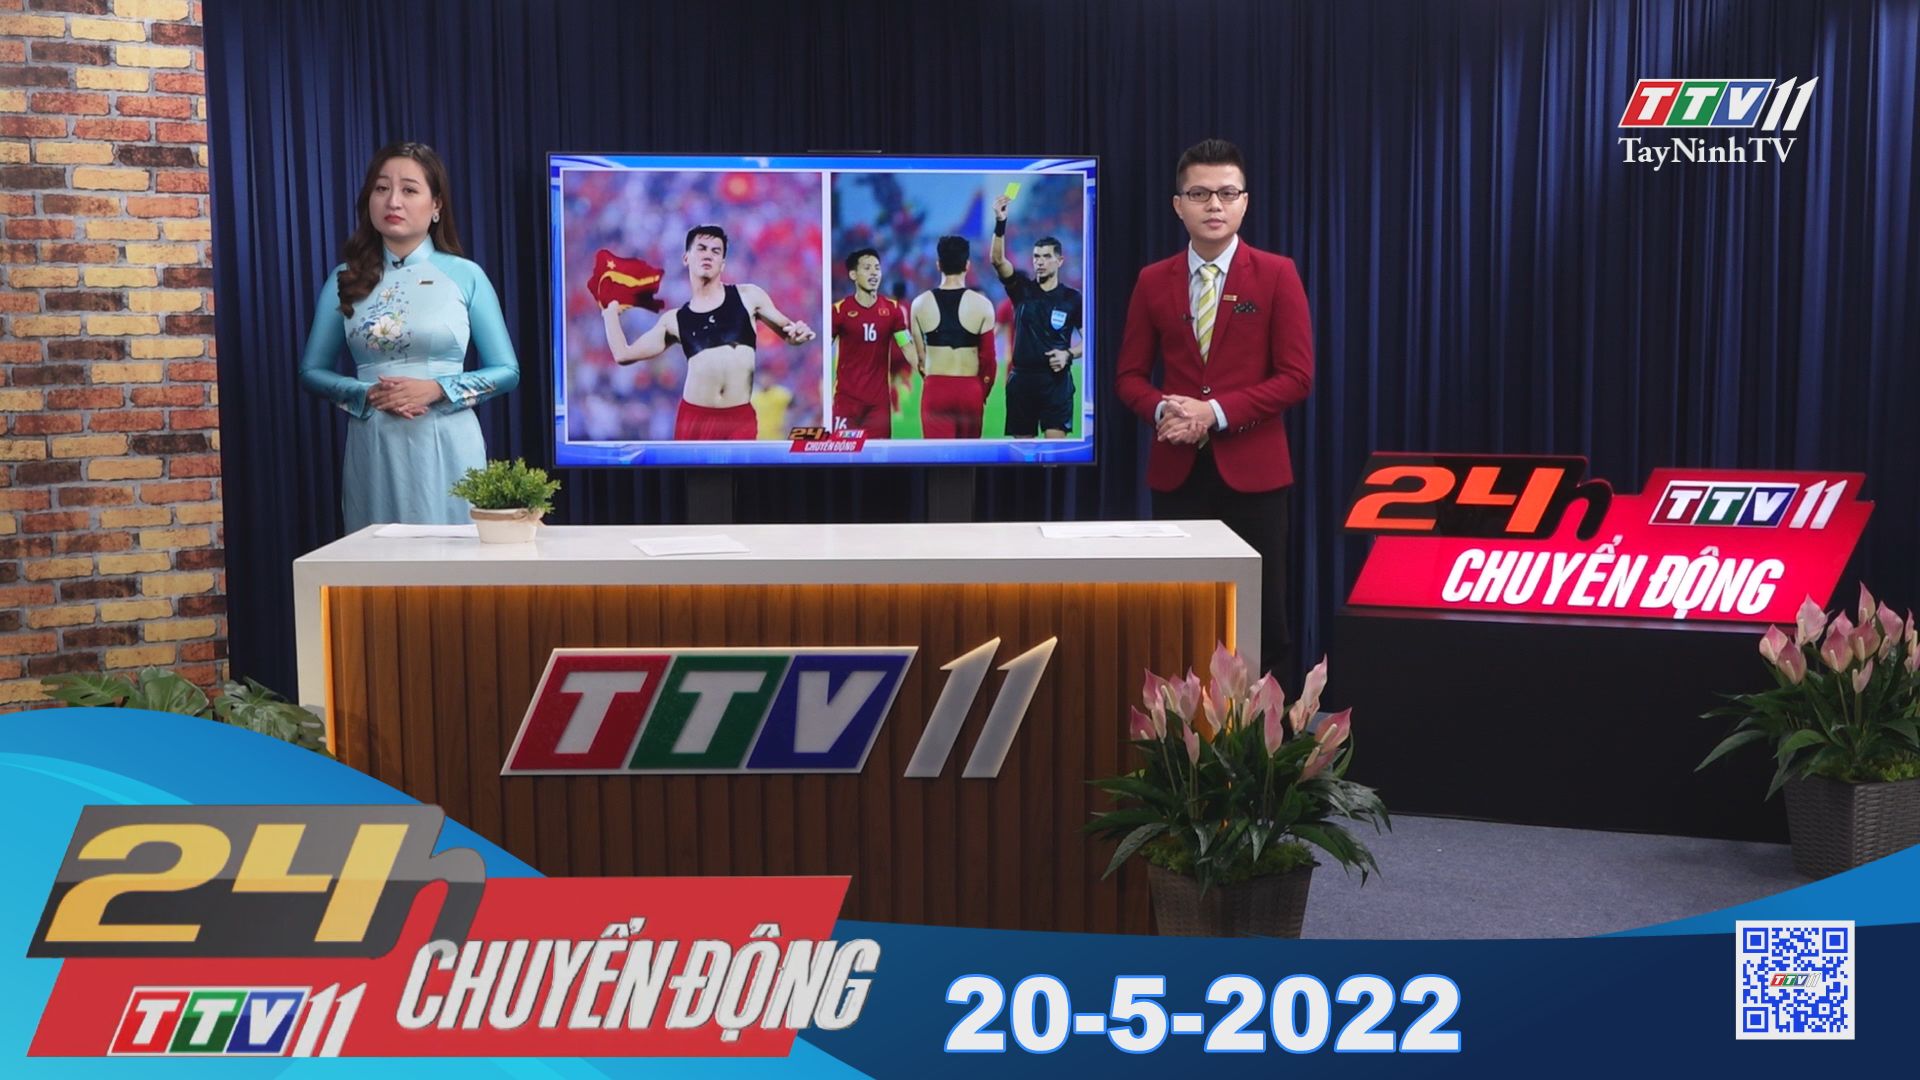 24h Chuyển động 20-5-2022 | Tin tức hôm nay | TayNinhTV